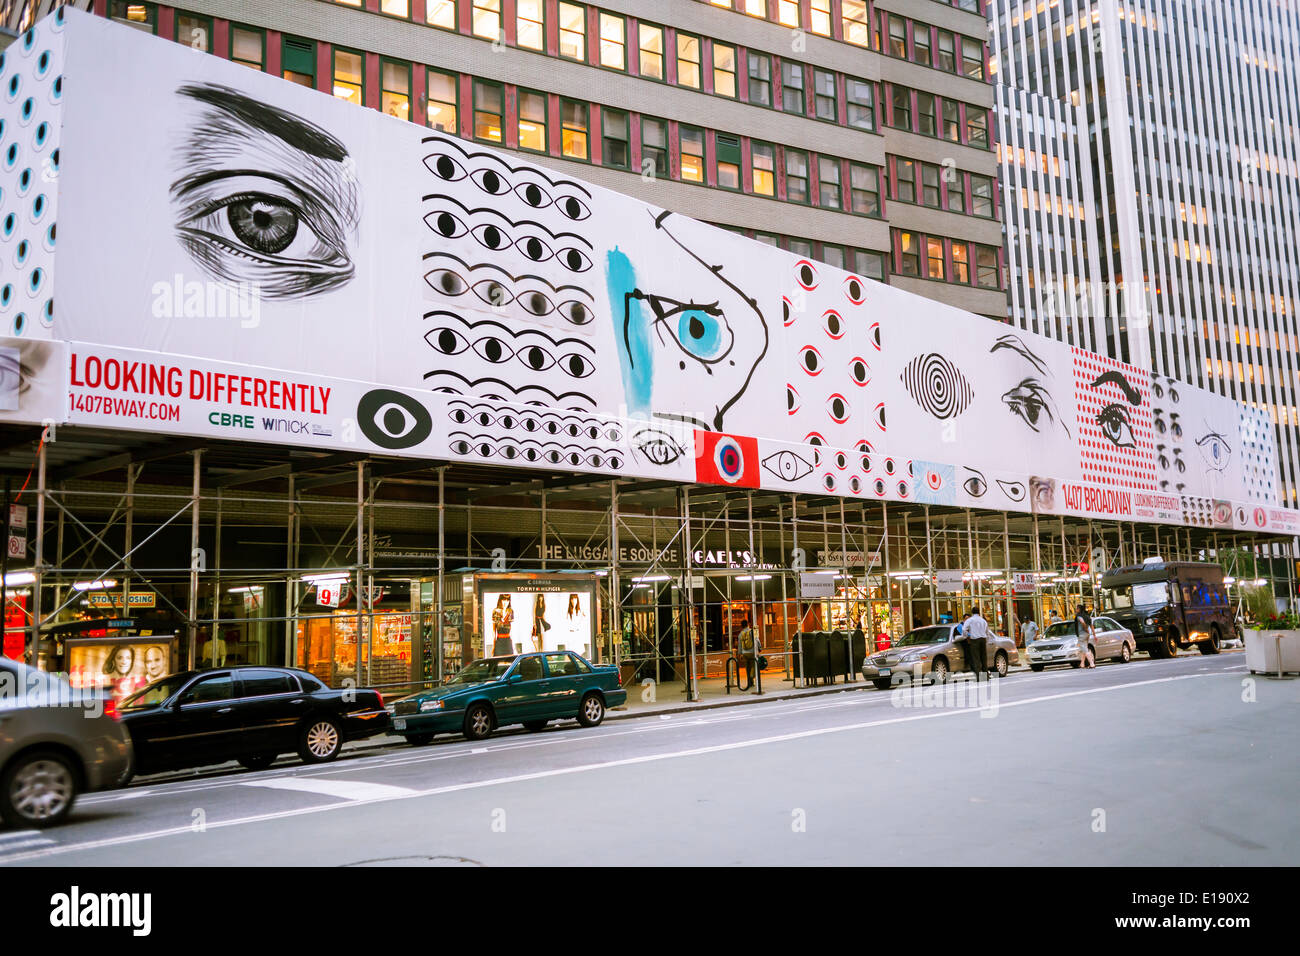 Der Bau, die Schuppen über die unter Renovierung 42 Geschichte 1407 Broadway in New York nutzt ein Blickfang "Augapfel" Motiv Stockfoto